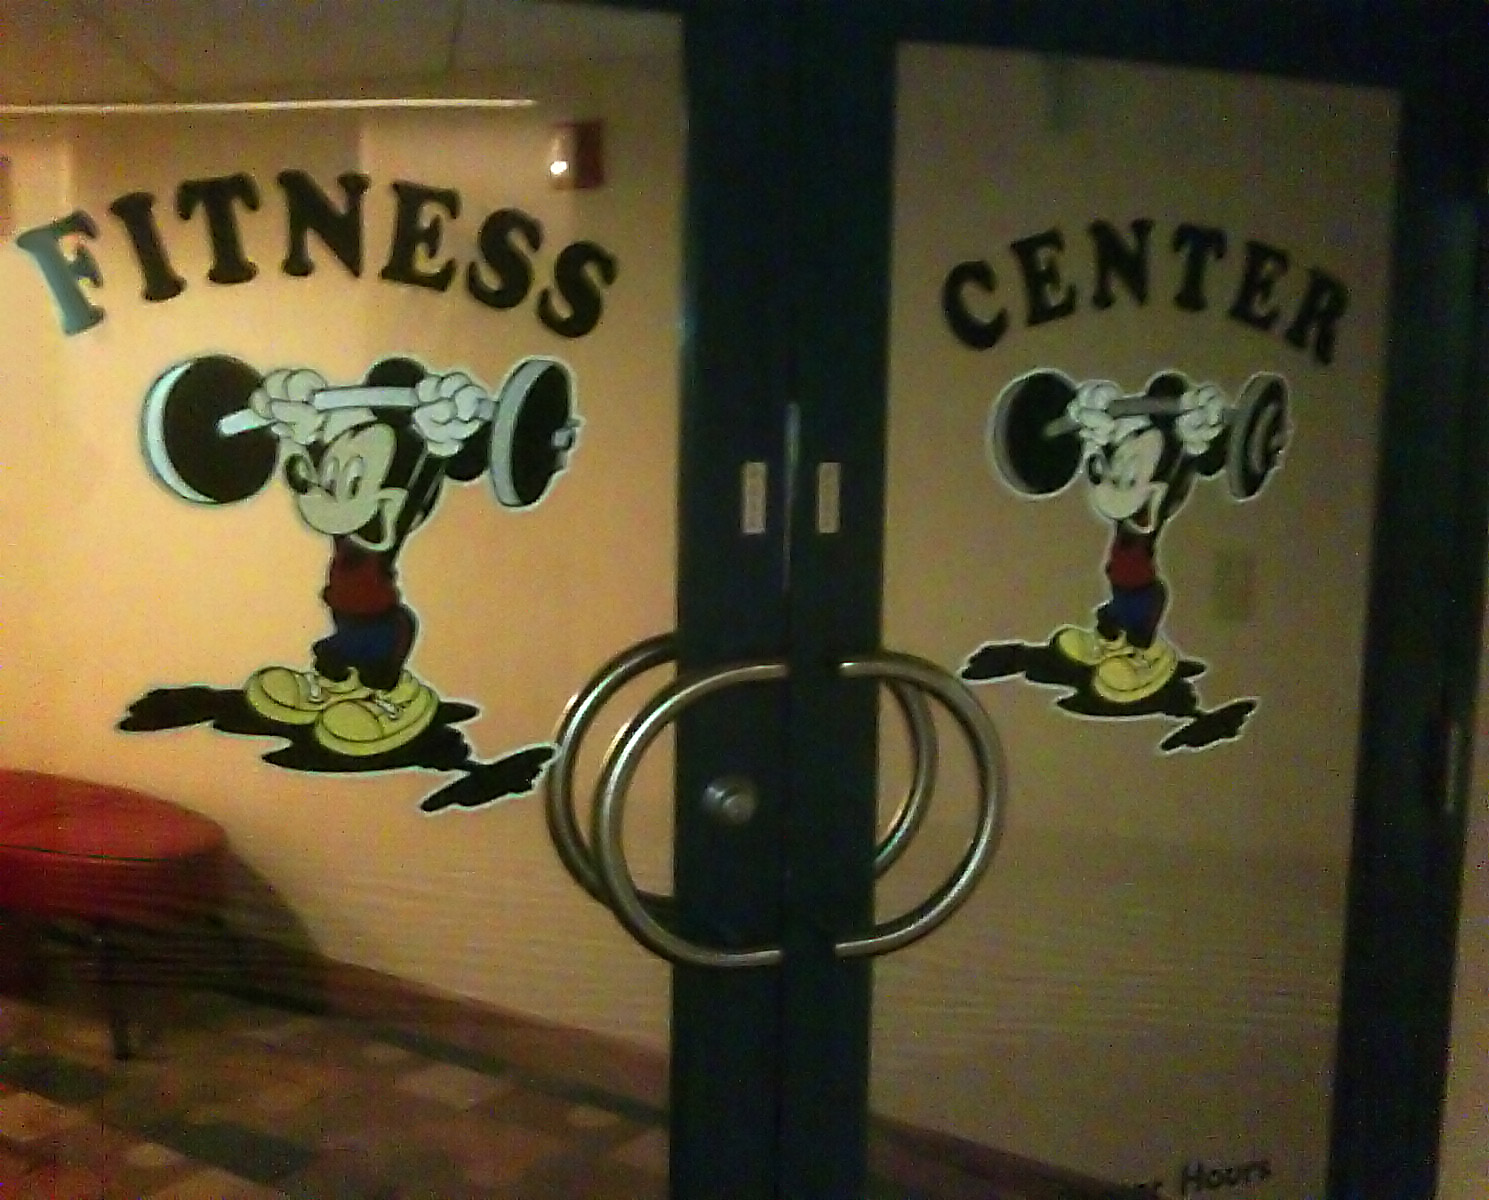 mickey_fitness_center.jpg